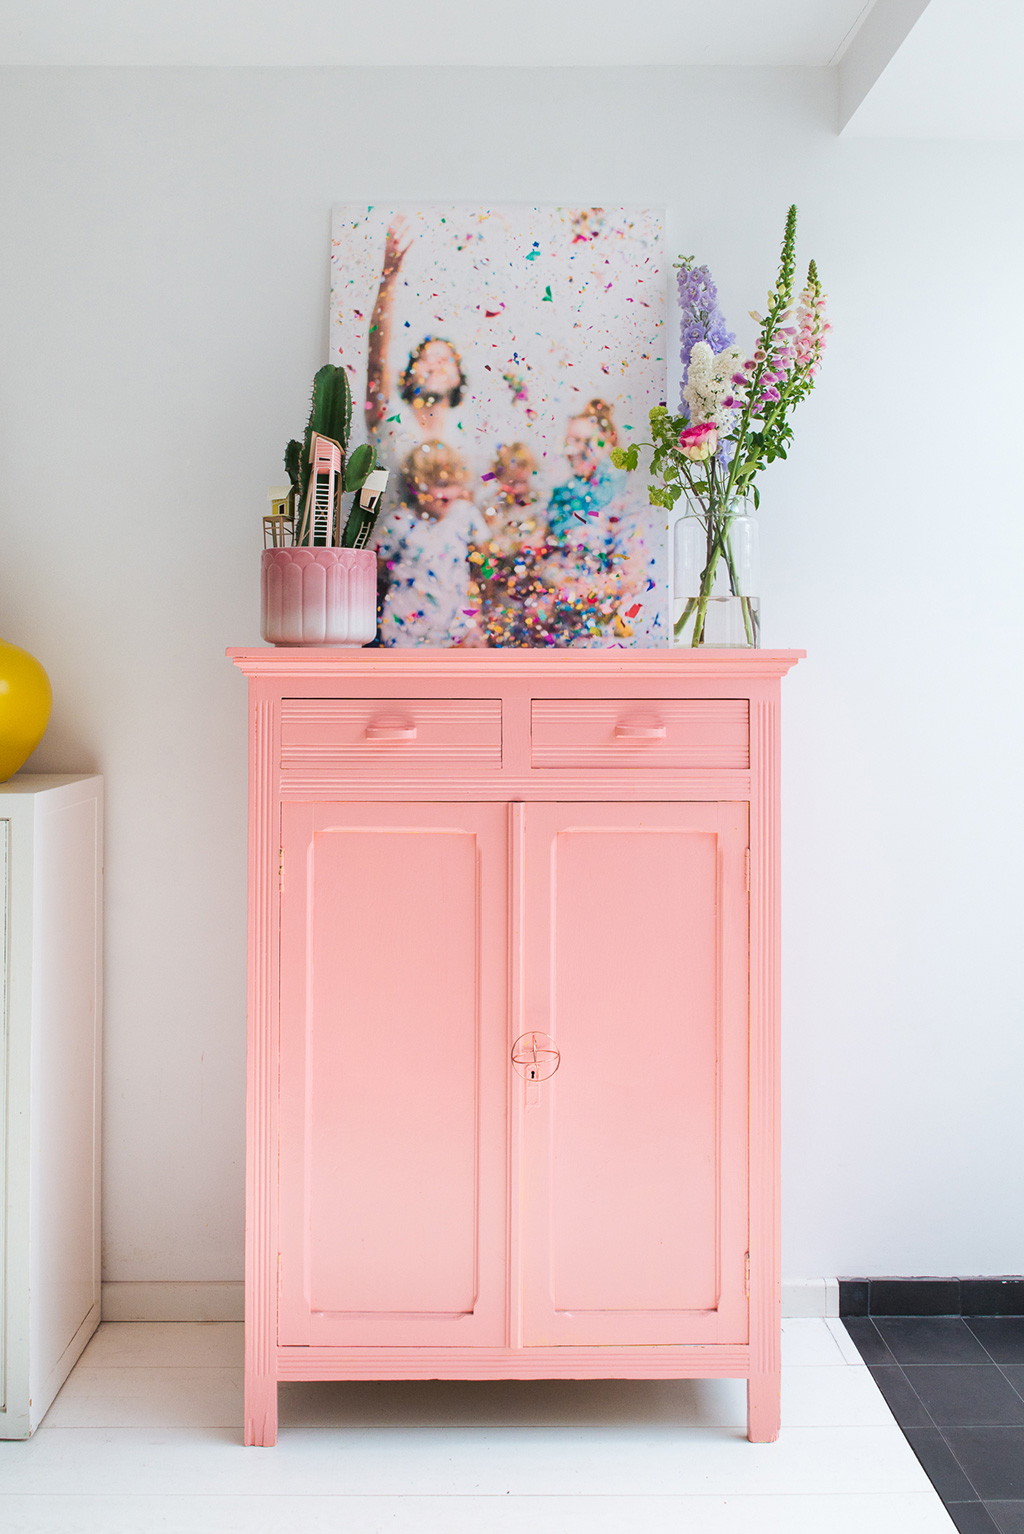 spring home decor, italianbark interior design blog, rose quartz, pantone 2016 home decor, rose quartz interiors